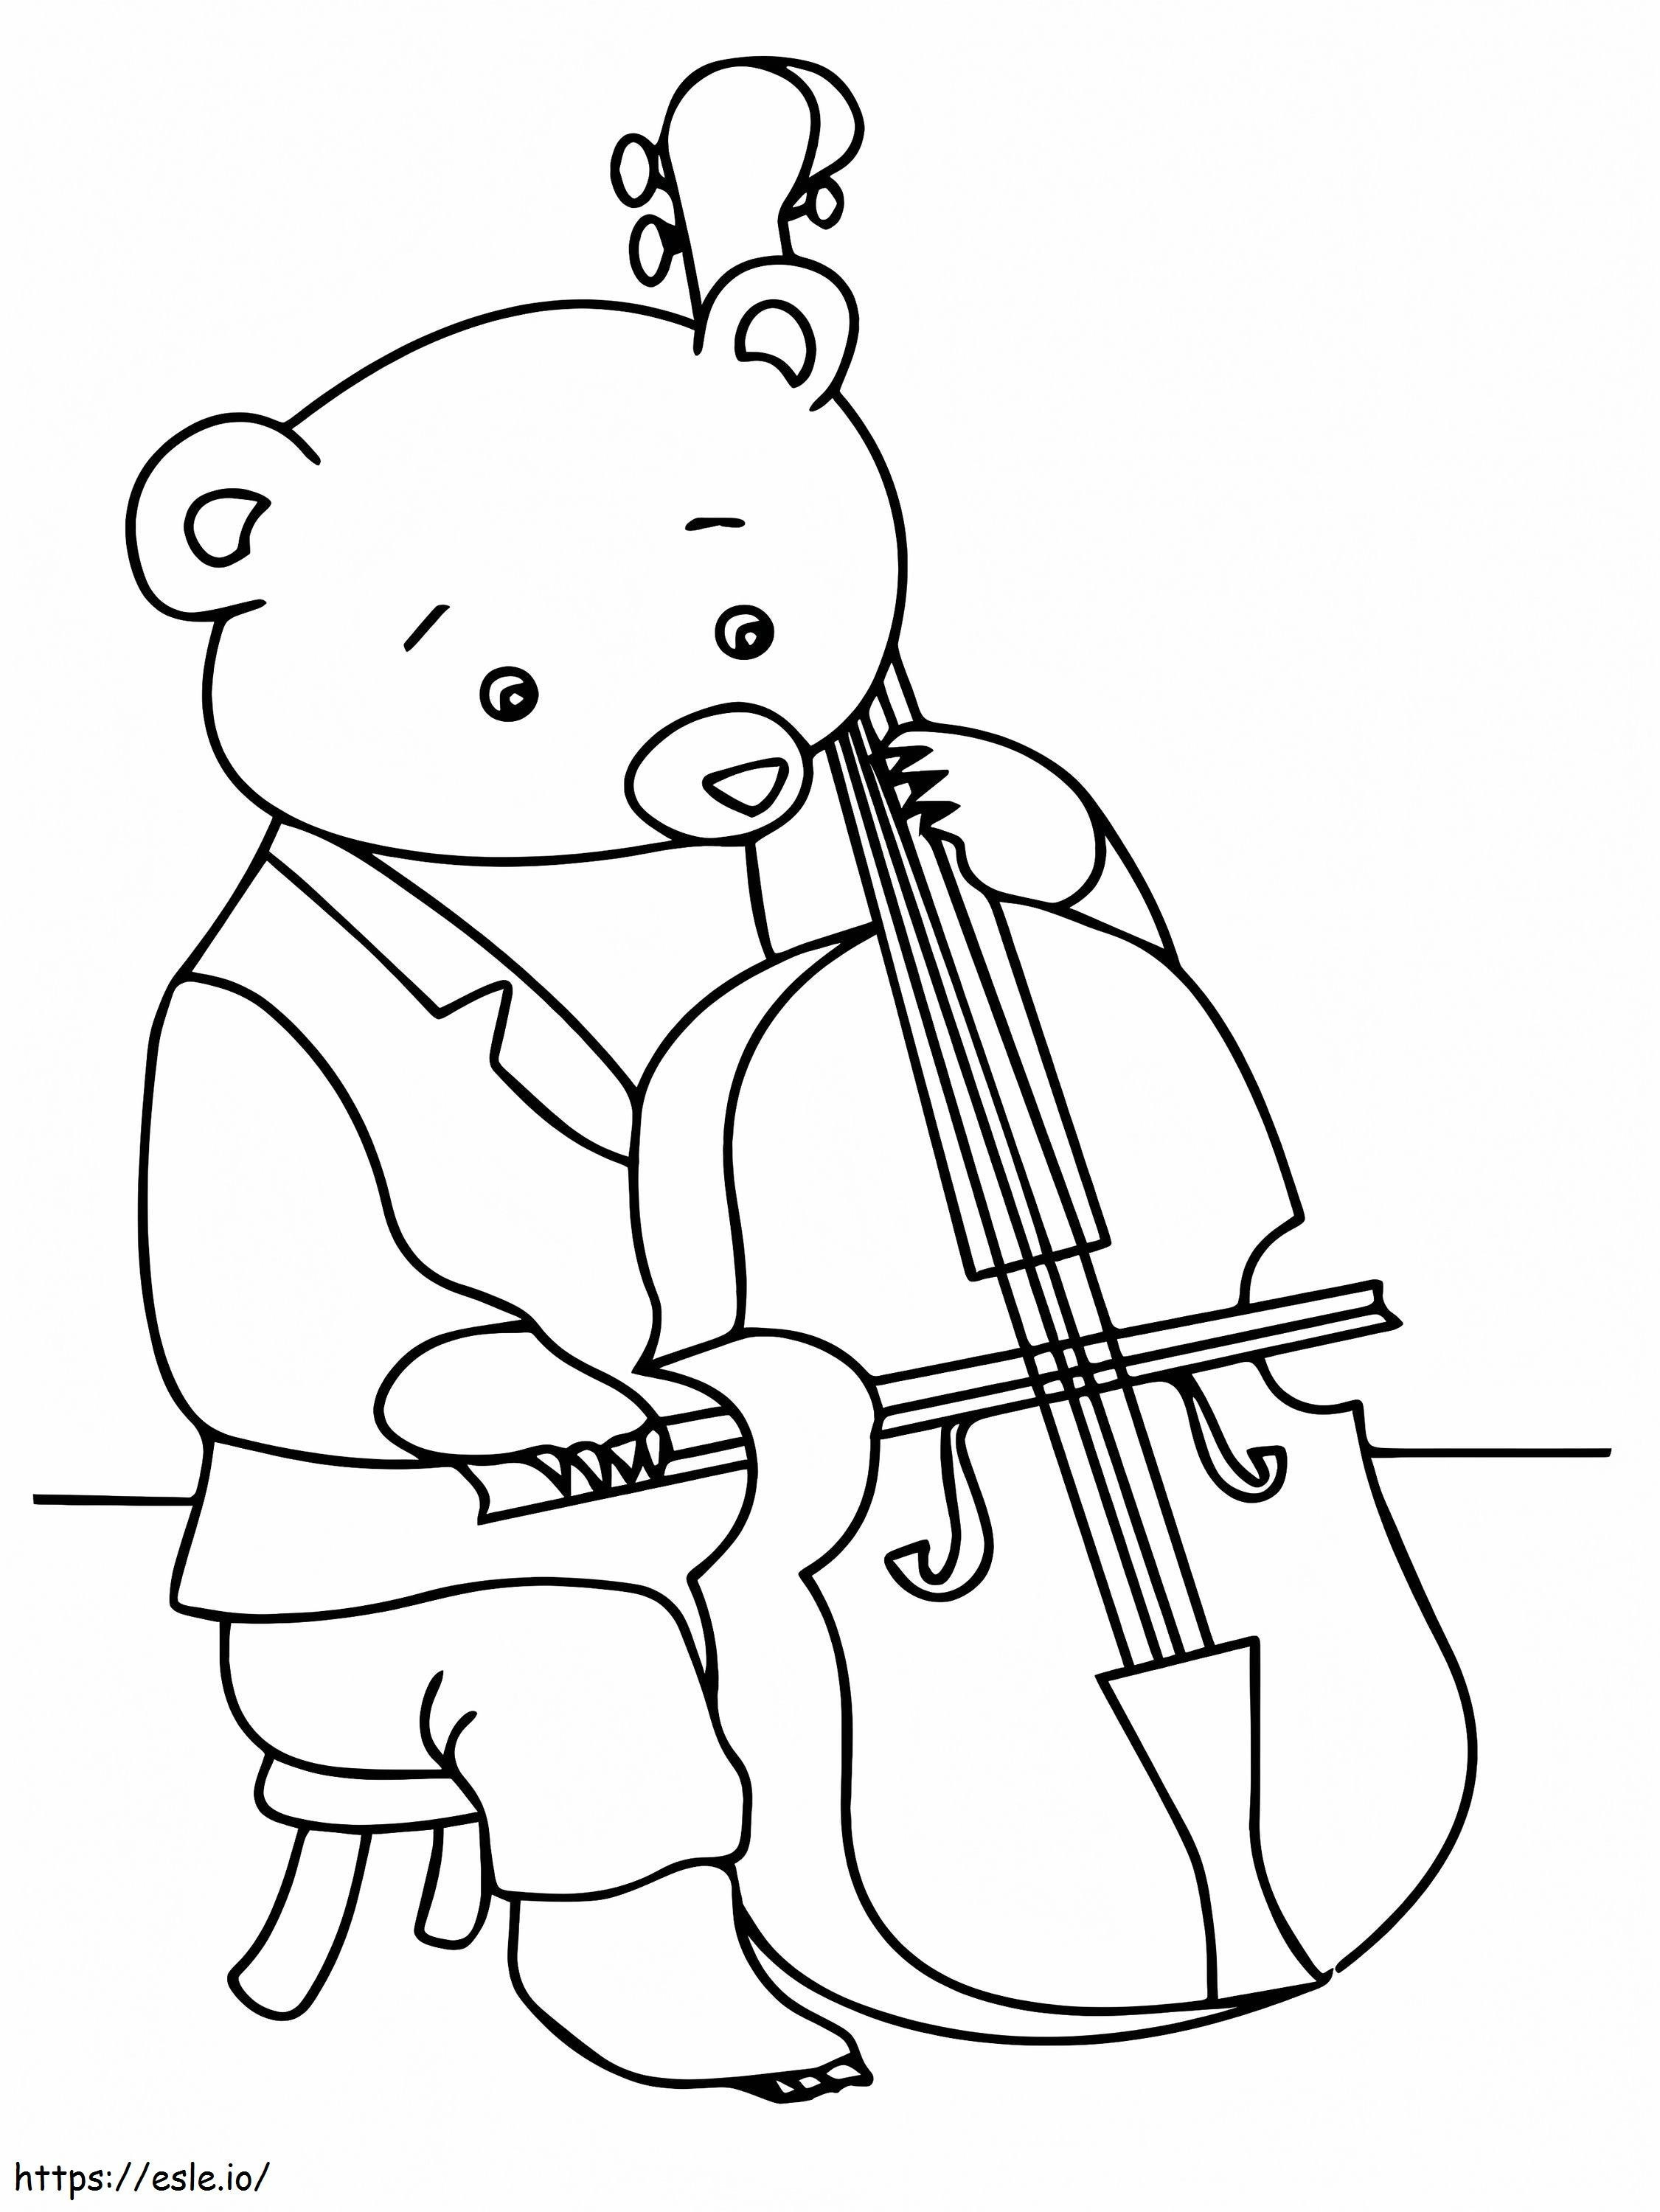 Orso che suona il violoncello da colorare